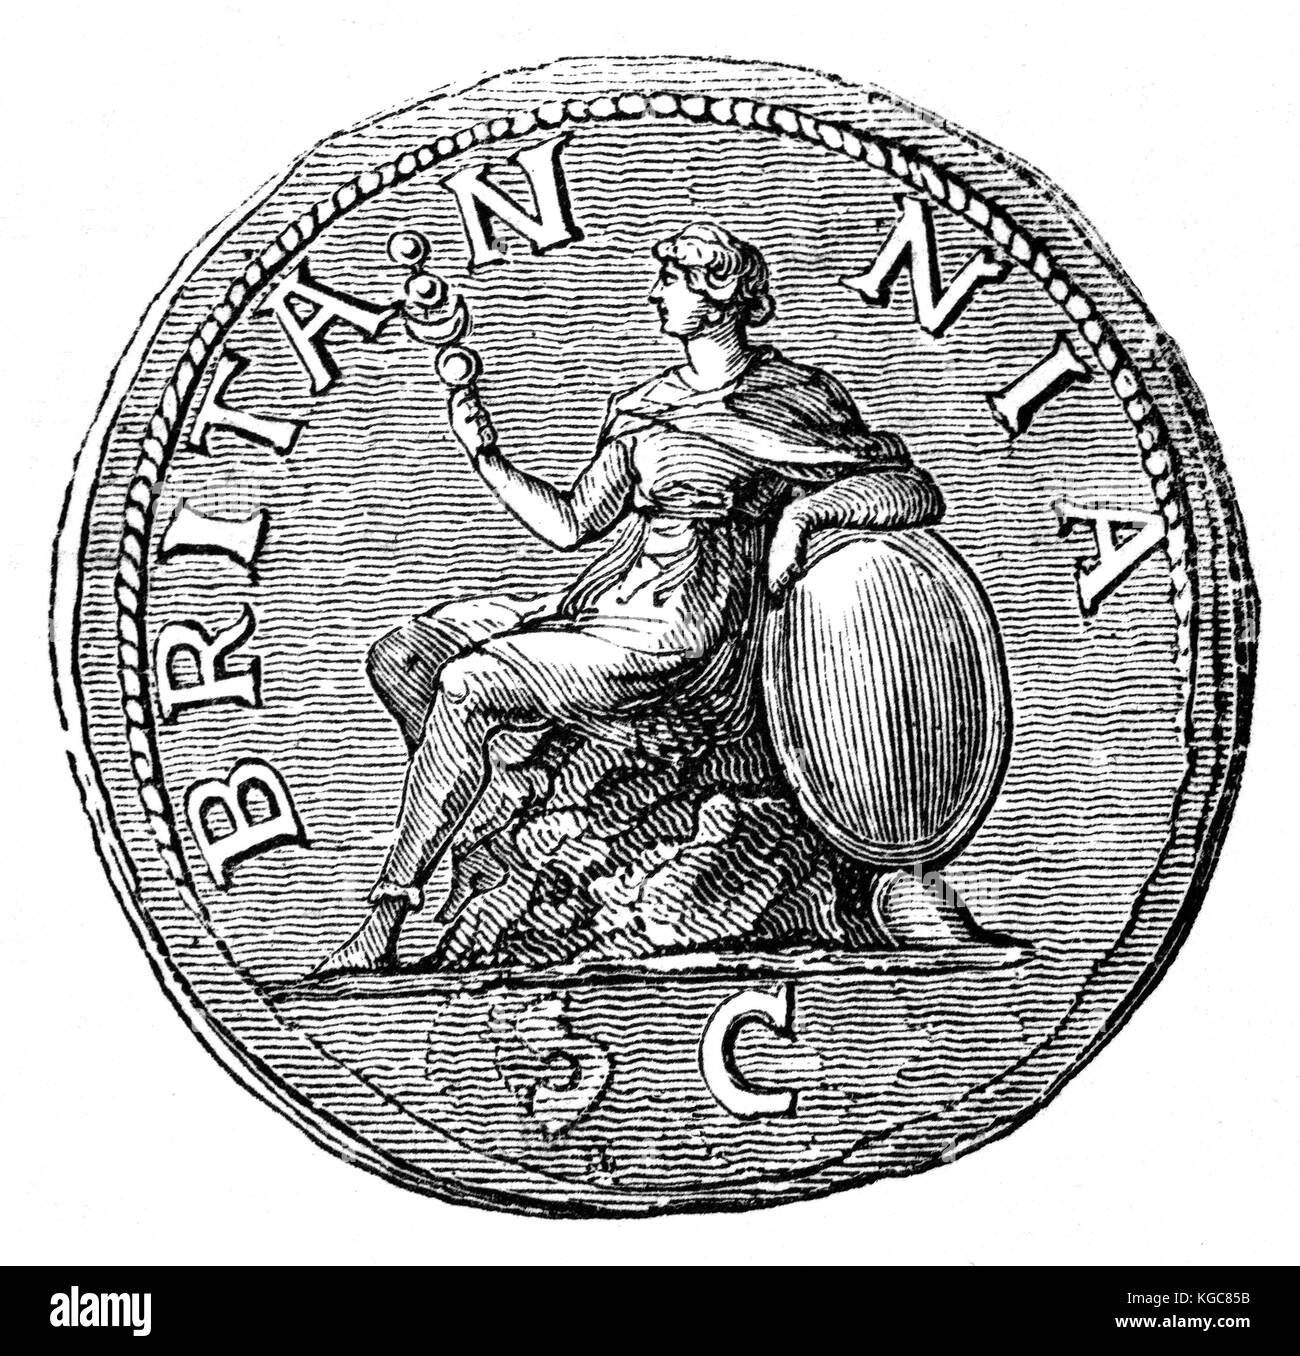 La première représentation de Britannia trouvés sur sur l'ancienne pièce de monnaie romaine. 1er siècle probablement. Banque D'Images